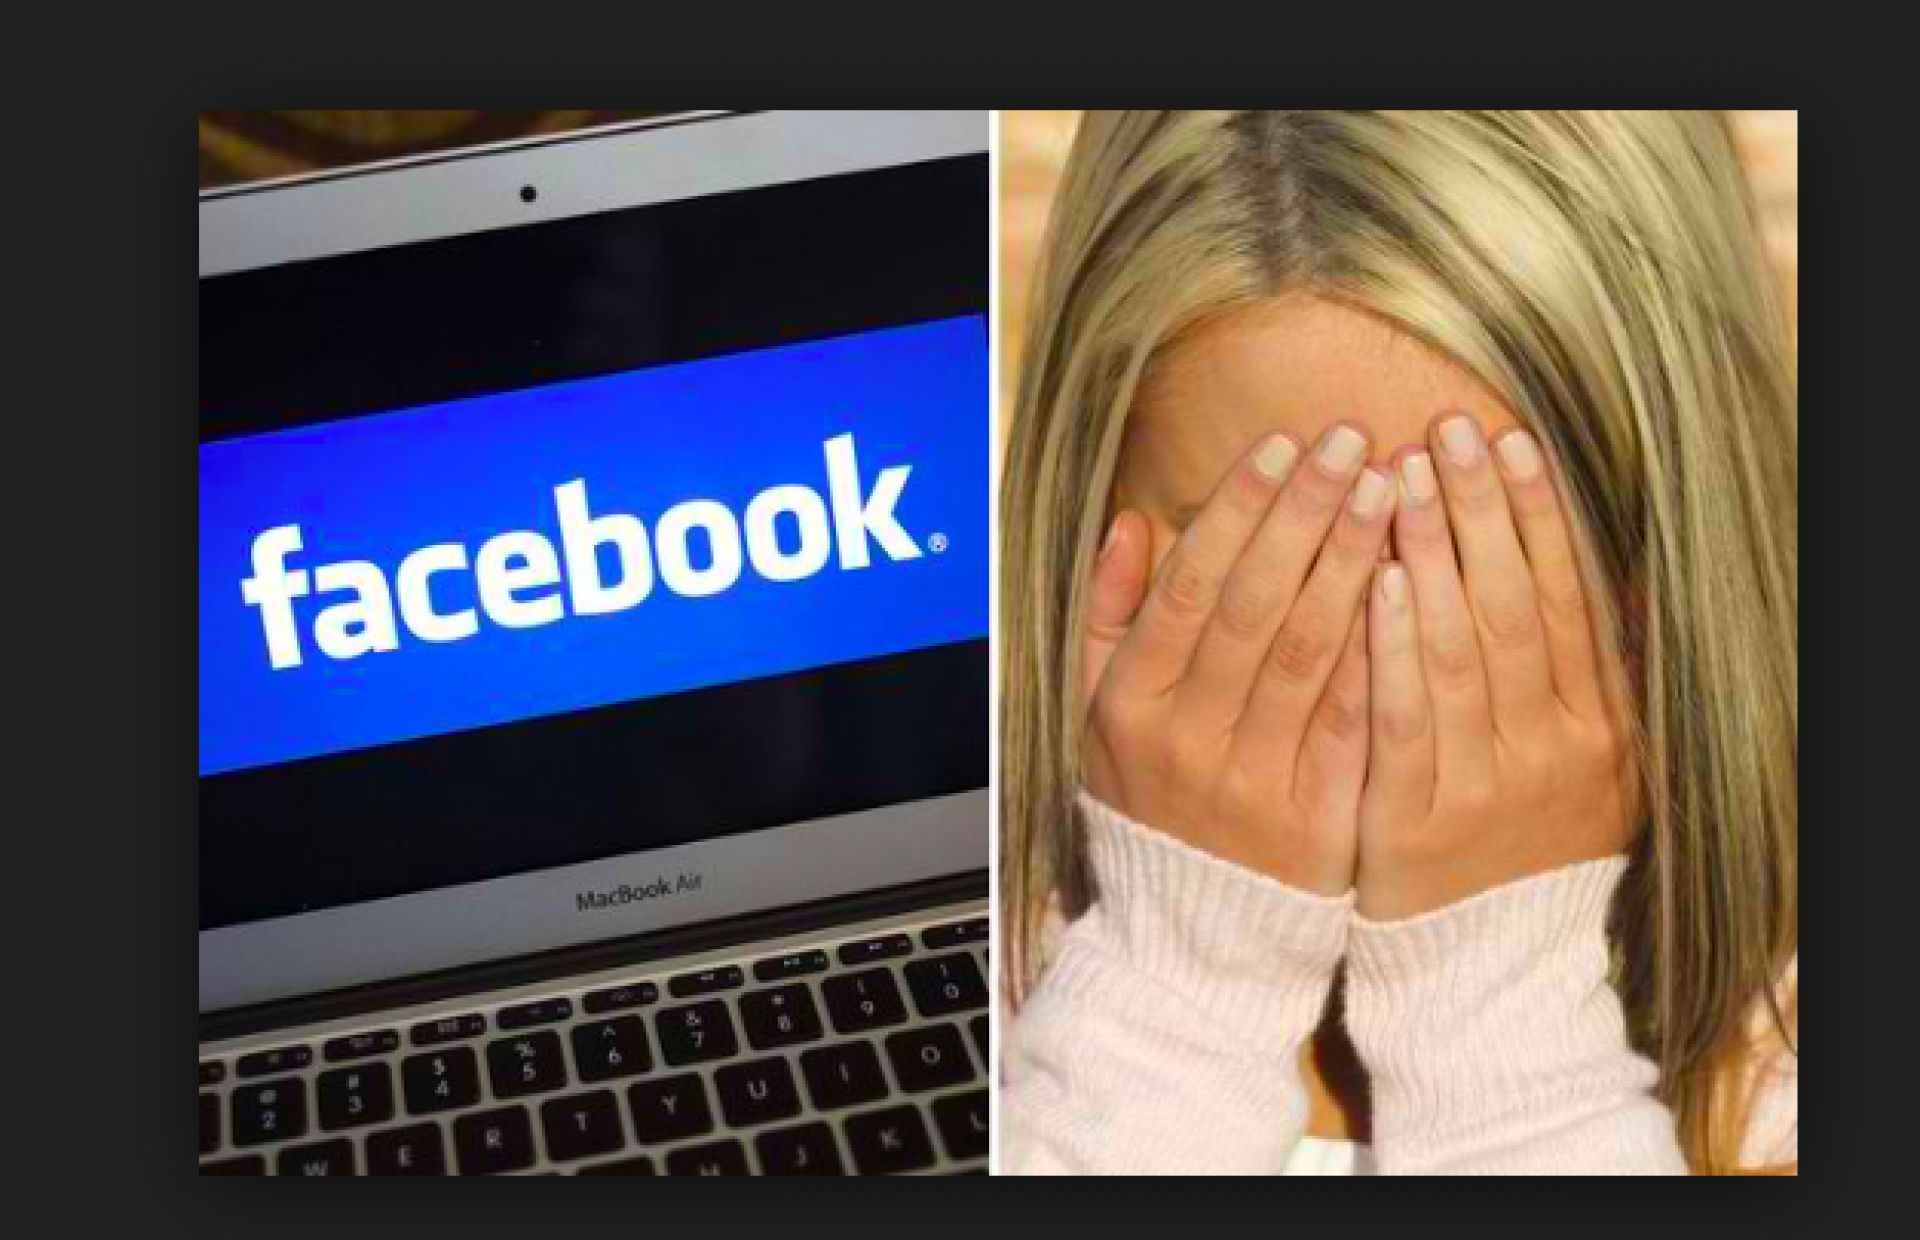 Facebook intikam pornoları için önlem alıyor!